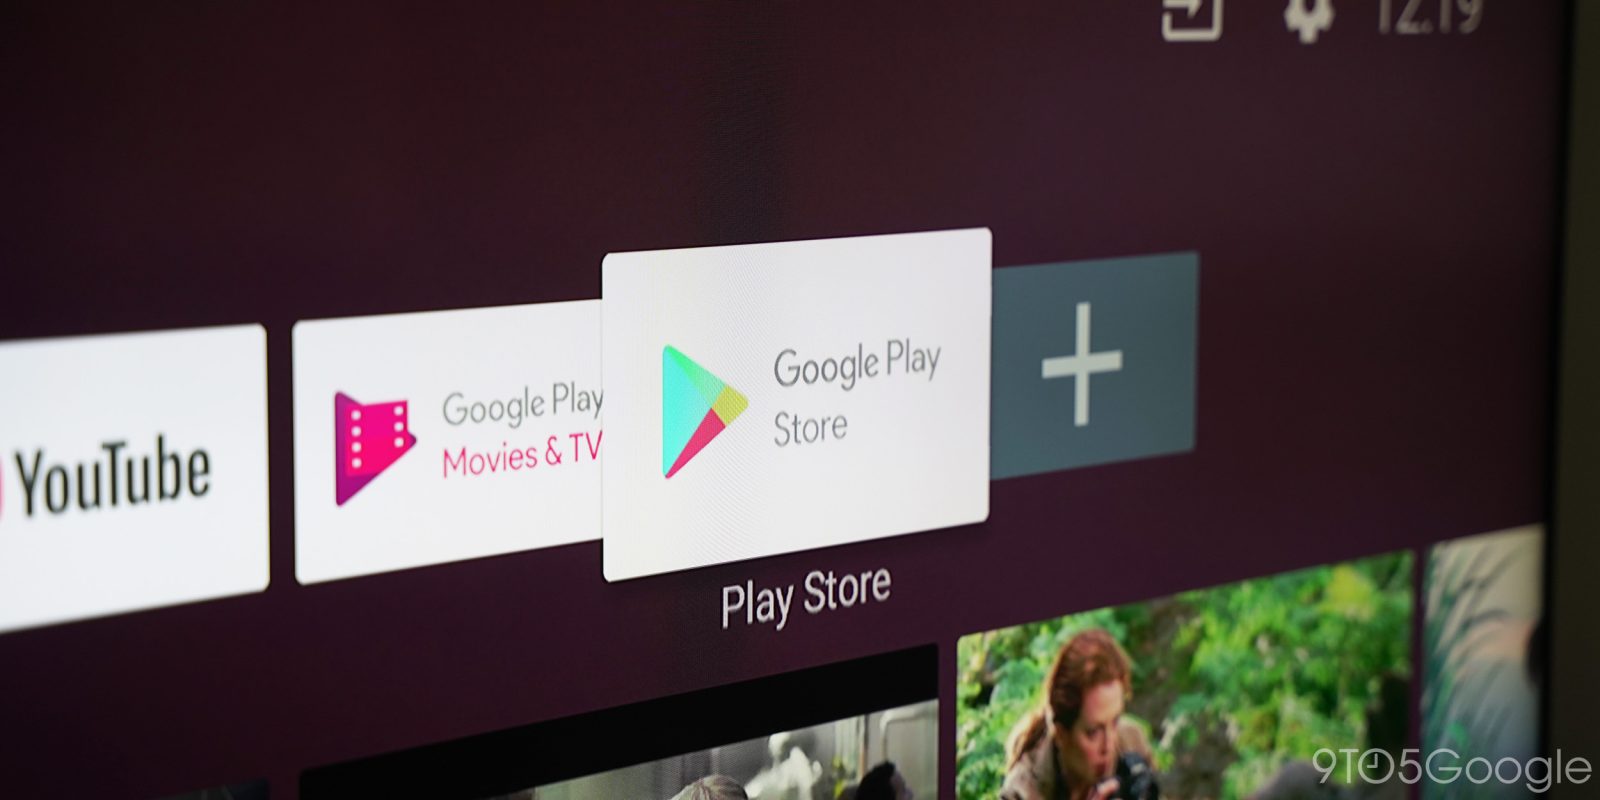 como colocar Google play store em qualquer smart tv 